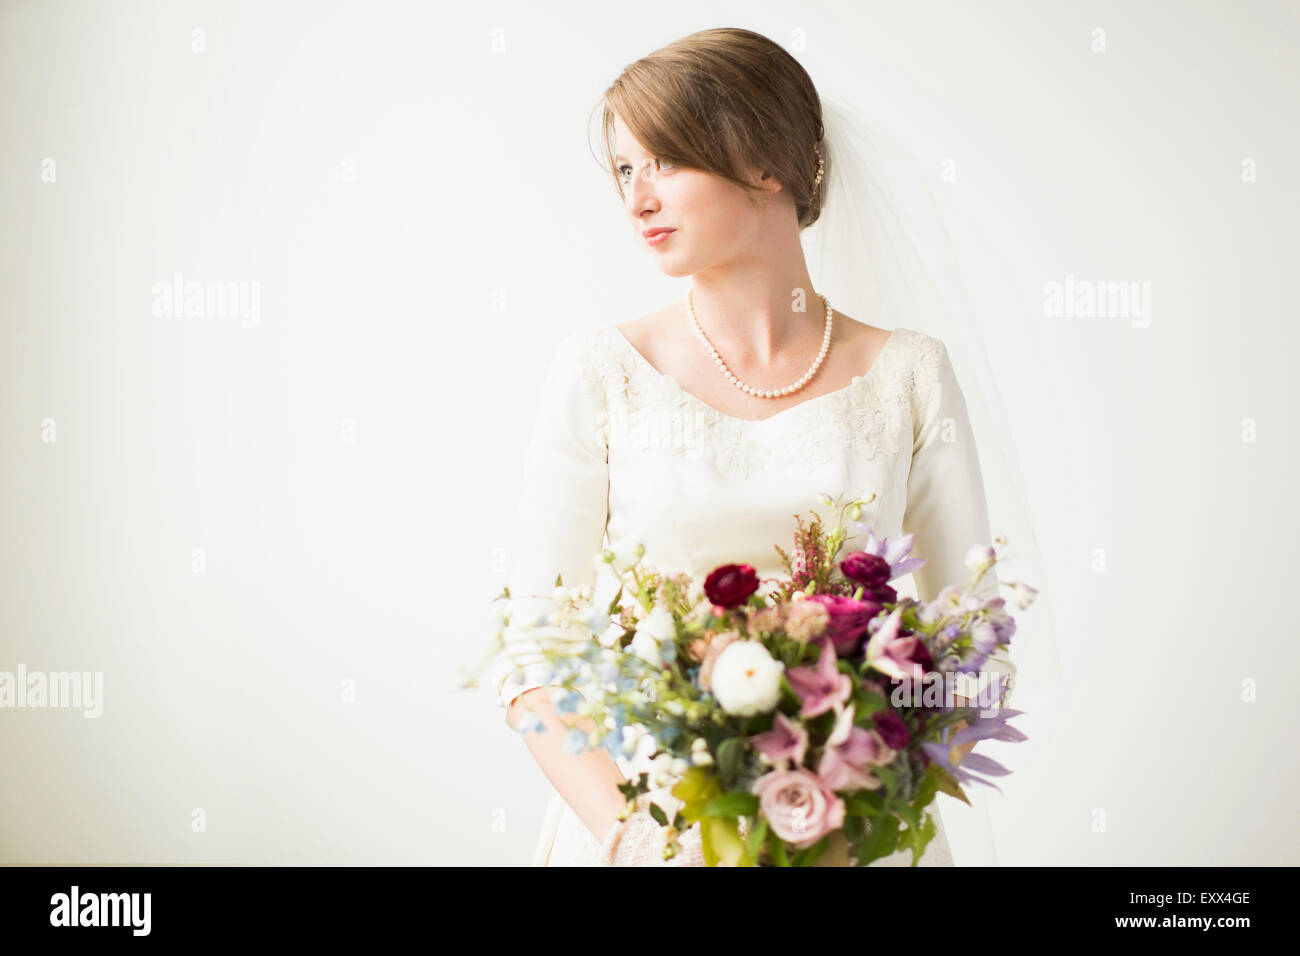 Portrait de mariage bouquet de mariée Banque D'Images